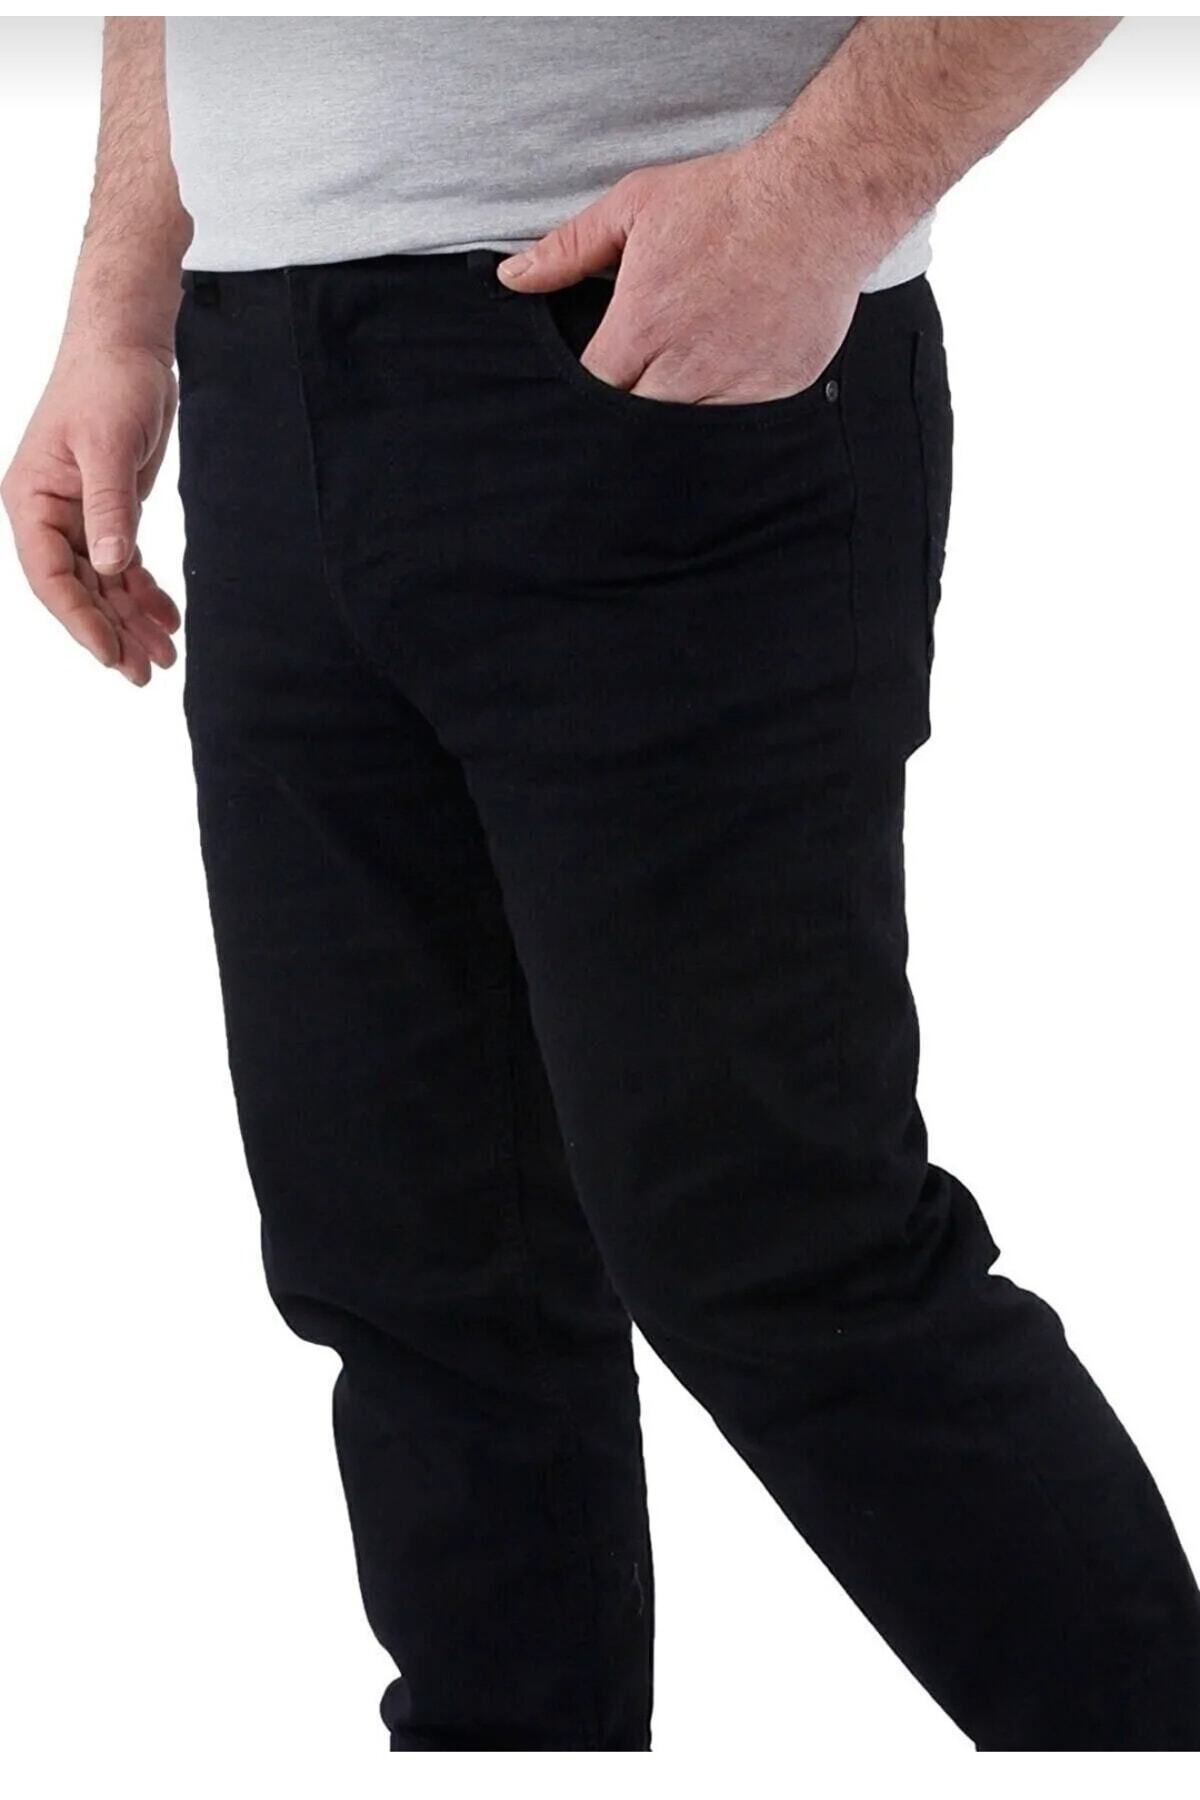 ClaSs fashion Erkek Likralı Boru Paça Yüksek Bel Battal Büyük Beden Siyah Kot Pantolon